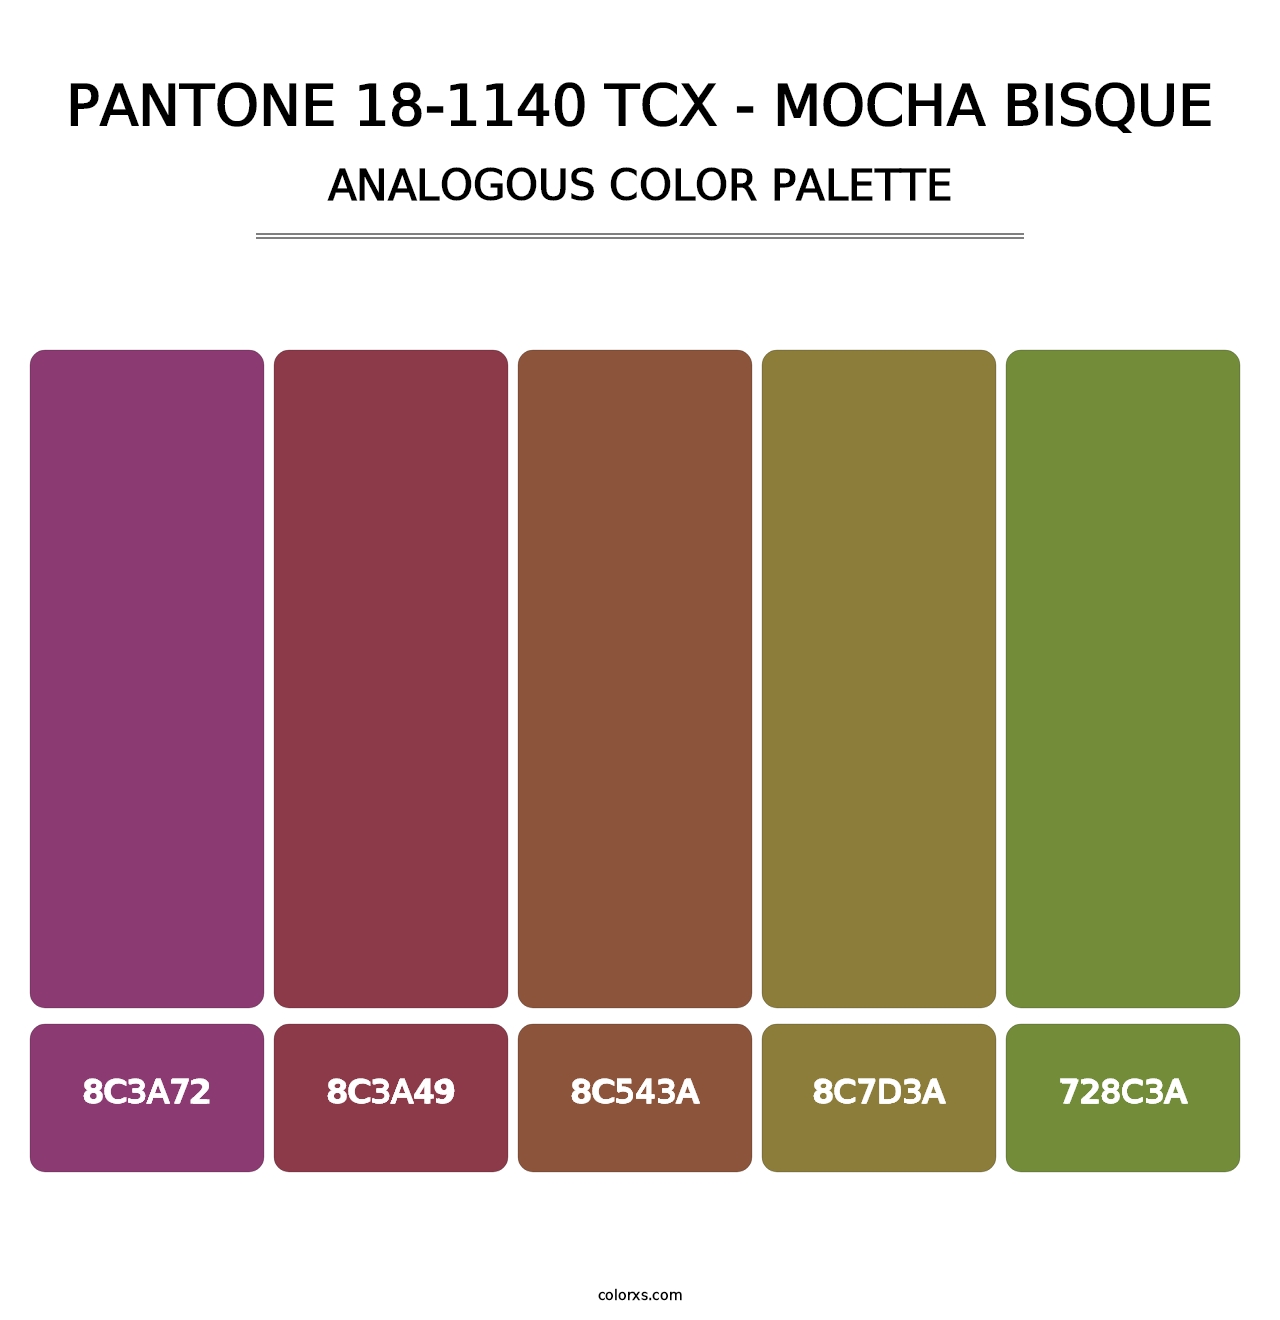 PANTONE 18-1140 TCX - Mocha Bisque - Analogous Color Palette